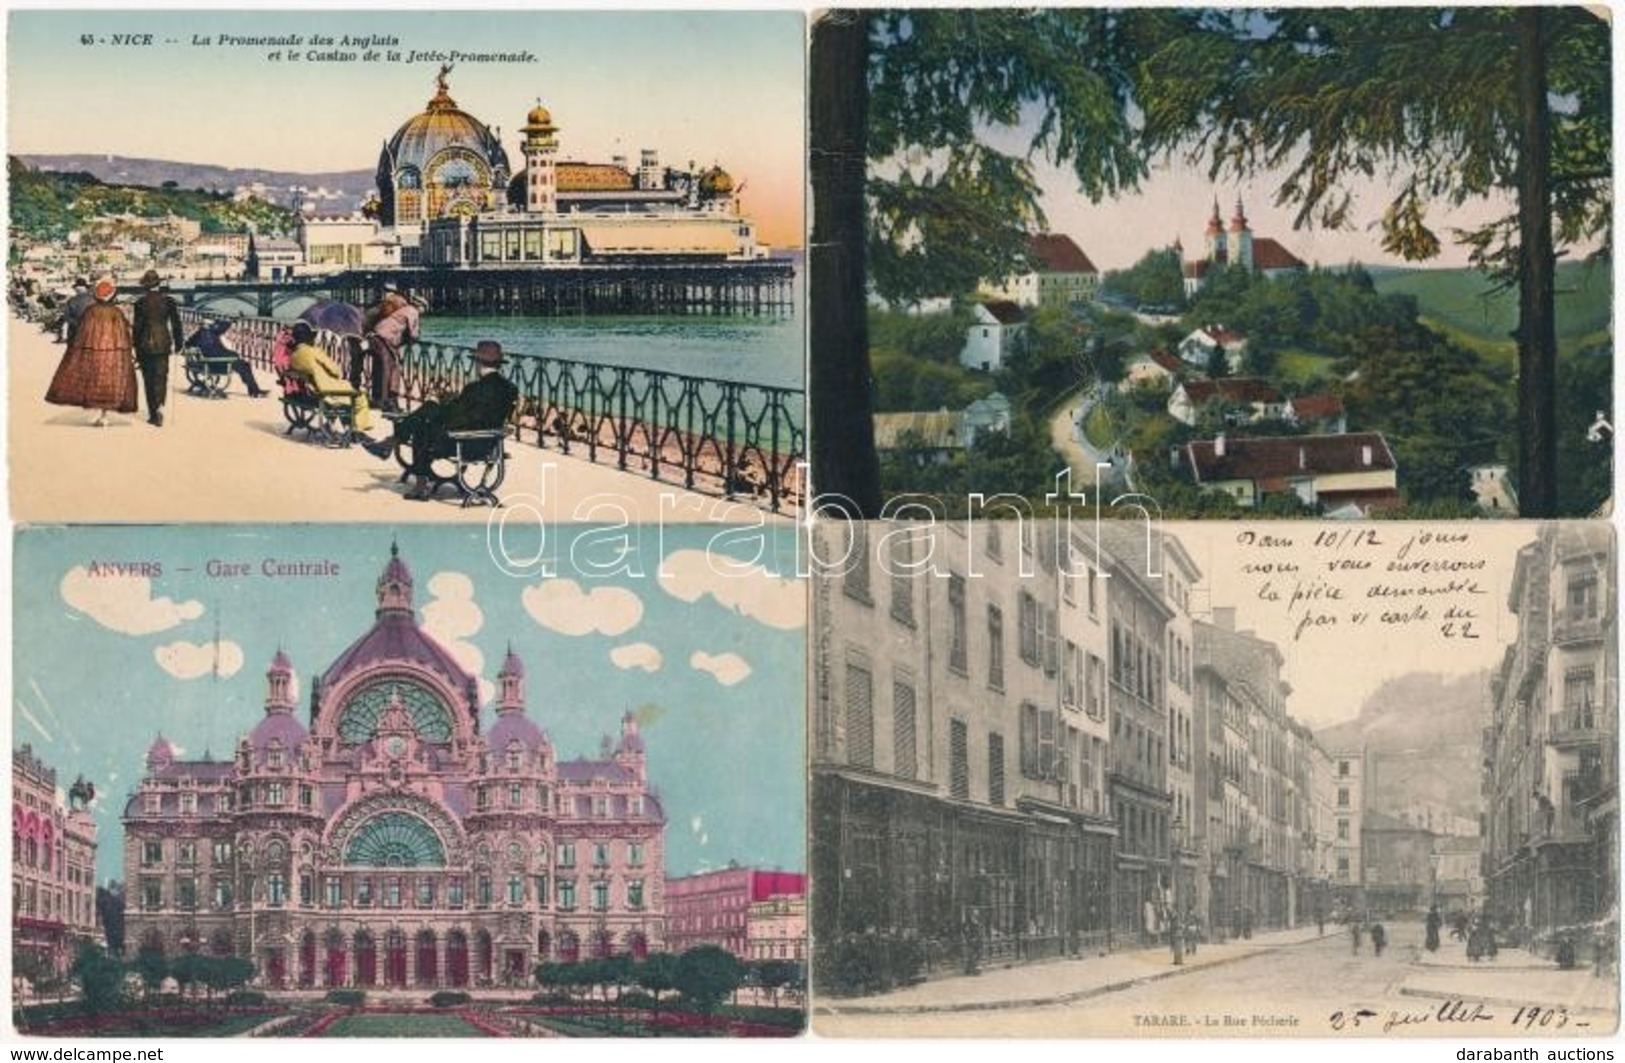 ** * 125 Db Régi Vegyes Külföldi Városképes Lap / Old Foreign City View Postcards, 125 Pcs. - Zonder Classificatie